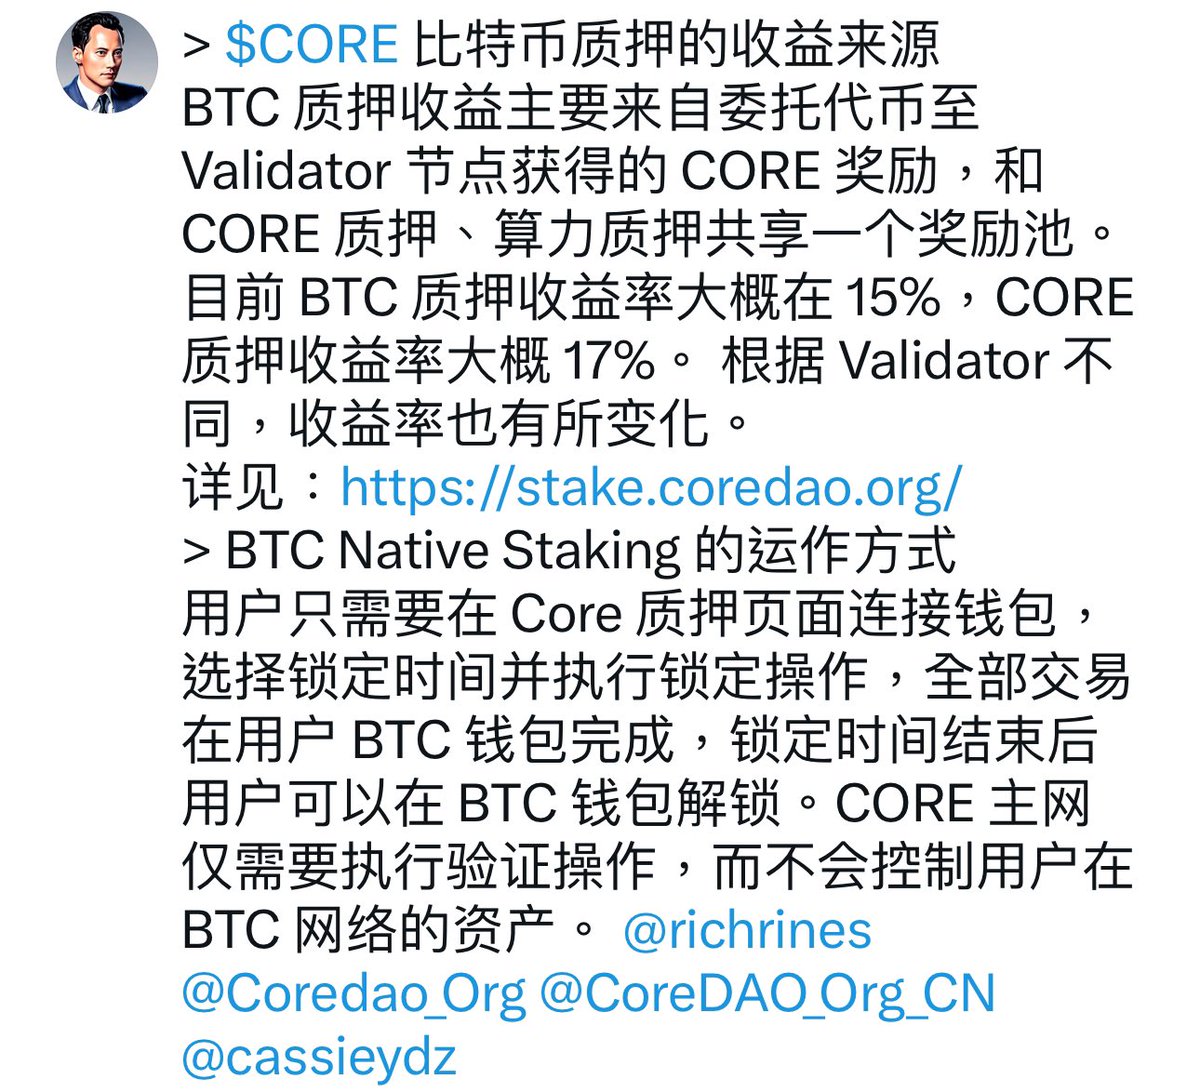 > $CORE 比特币质押的收益来源
BTC 质押收益主要来自委托代币至 Validator 节点获得的 CORE 奖励，和 CORE 质押、算力质押共享一个奖励池。目前 BTC 质押收益率大概在 15%，CORE 质押收益率大概 17%。 根据 Validator 不同，收益率也有所变化。
详见：stake.coredao.org
> BTC Native Staking